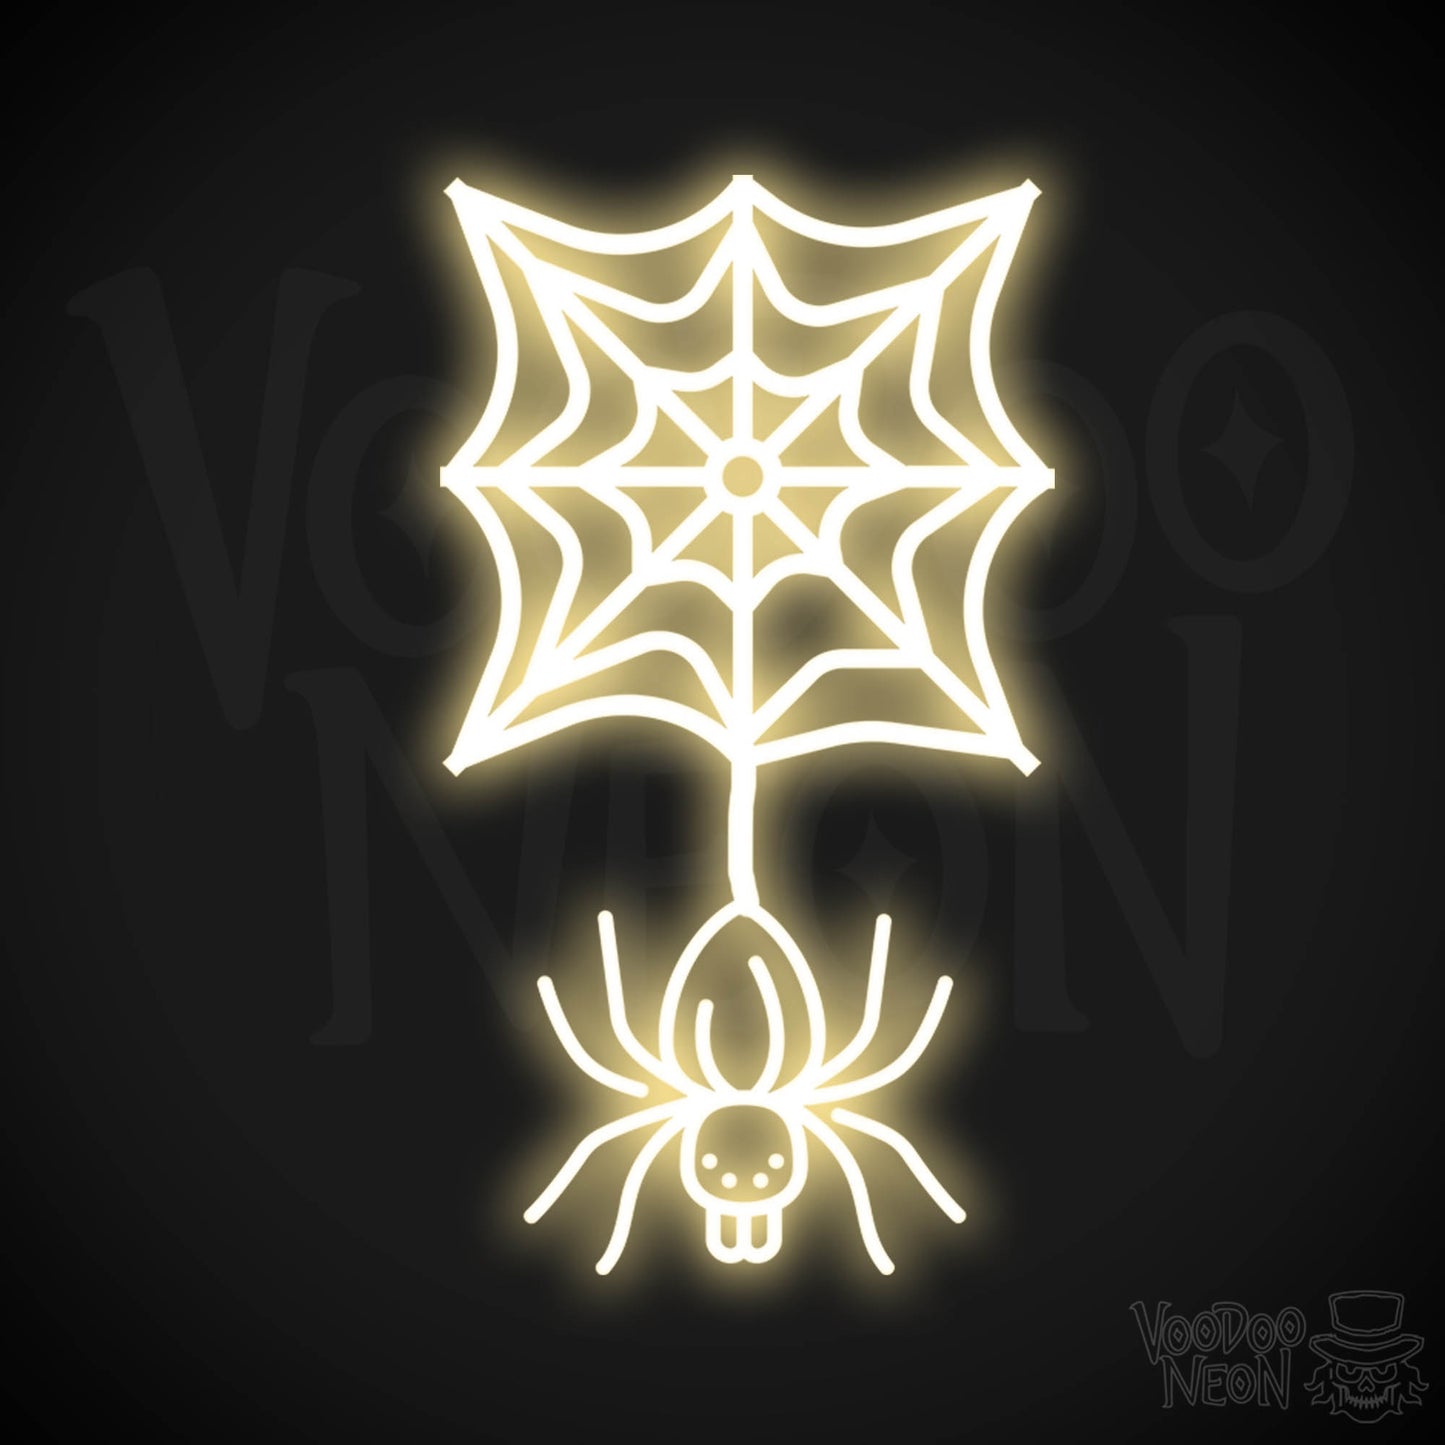 Neon Spider - Spider Neon Sign - Halloween LED Neon Spider - Color Warm White